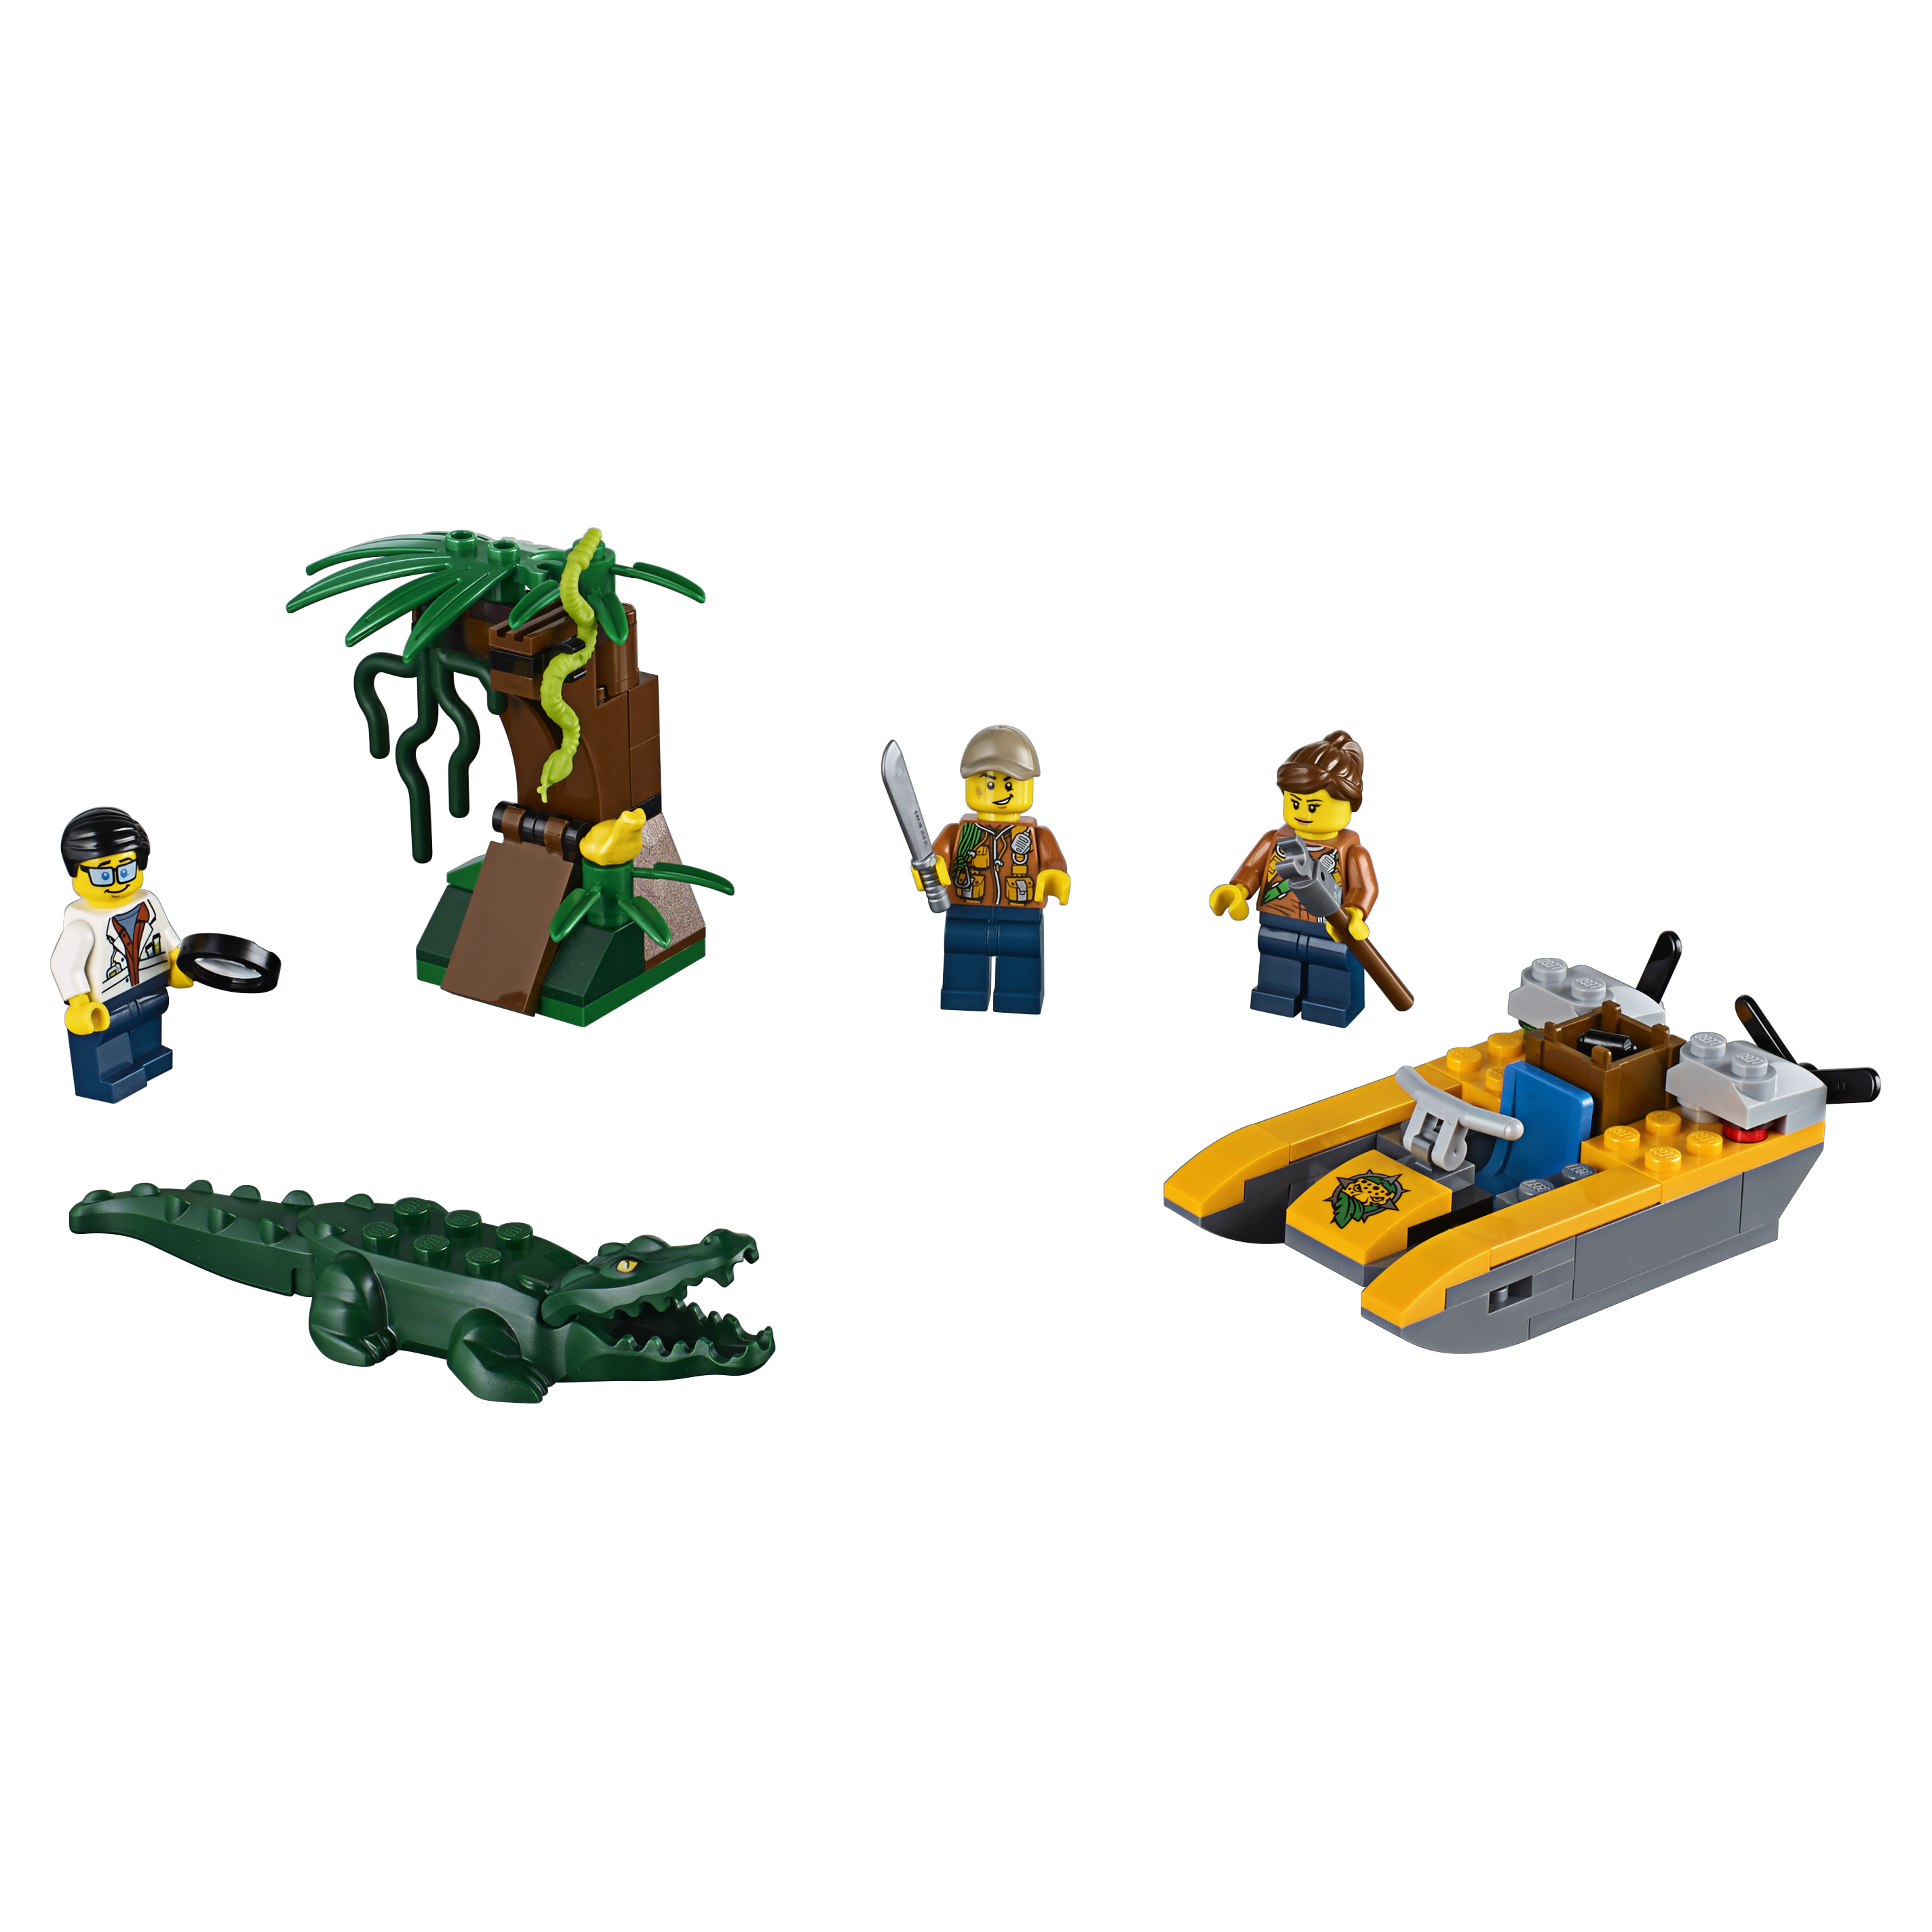 Конструктор LEGO City Jungle Explorers Набор Джунгли для начинающих (60157) набор приспособлений hexapod catcher для ловли насекомых